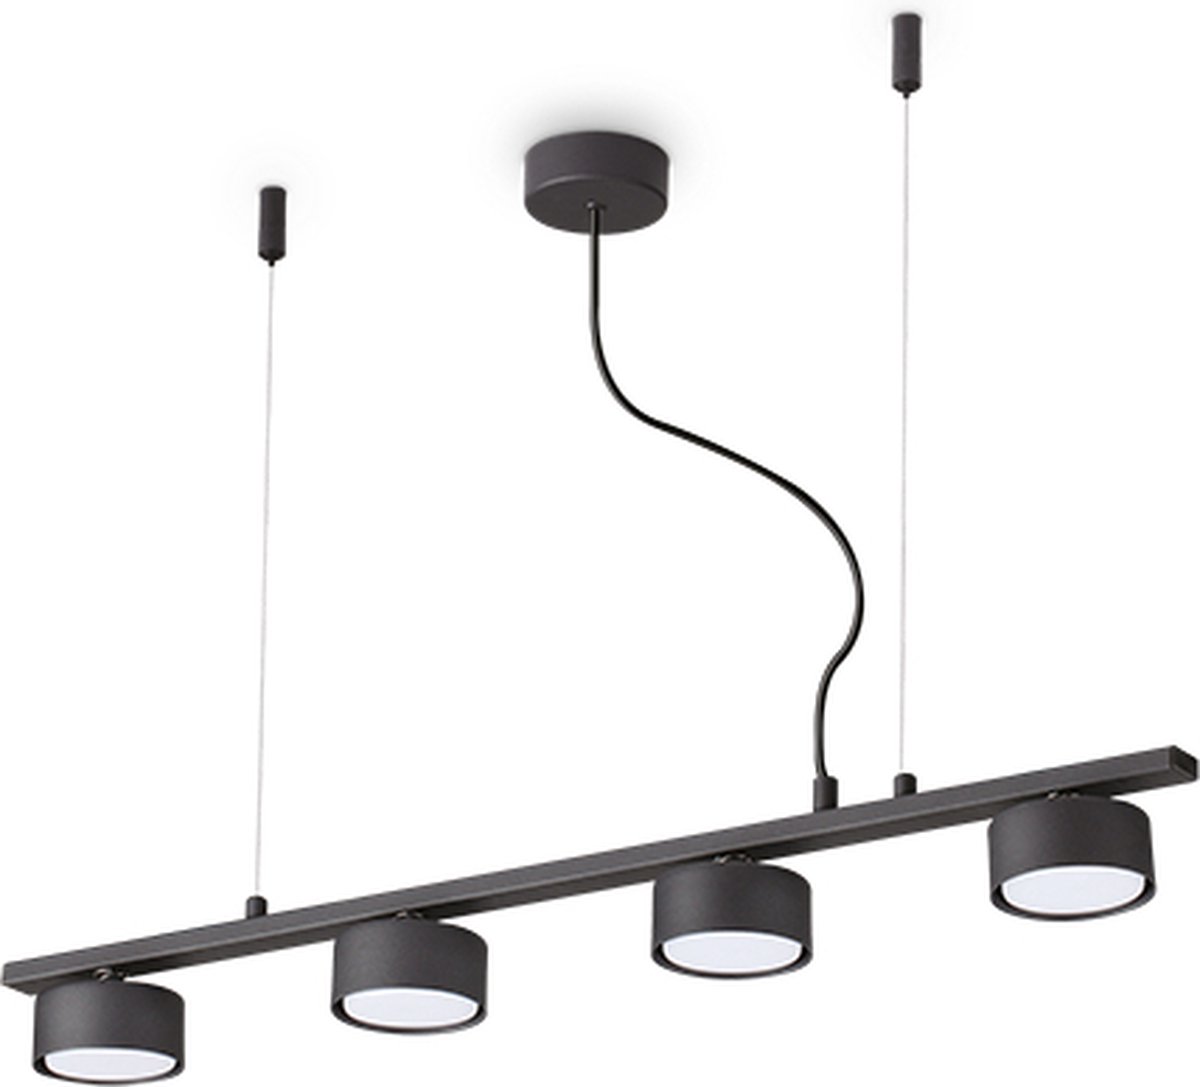 Ideal Lux - Minor - Hanglamp - Metaal - GX53 - Zwart - Voor binnen - Lampen - Woonkamer - Eetkamer - Keuken